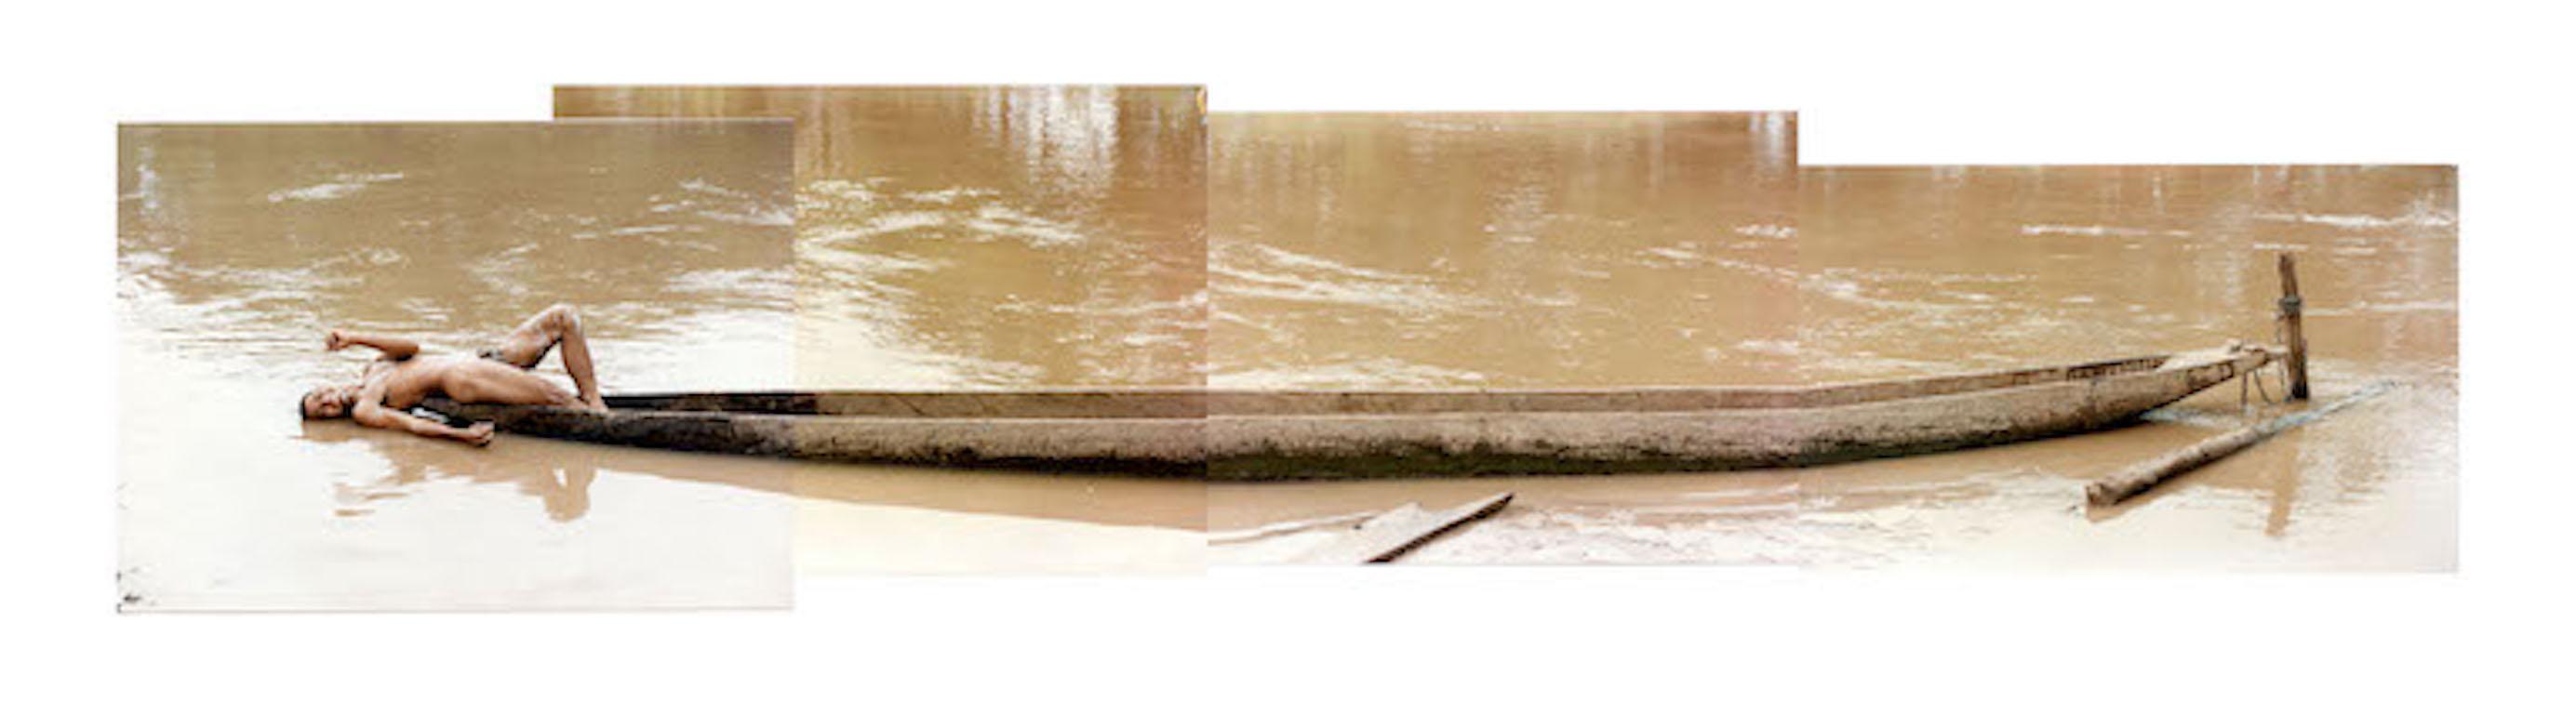 „Man in Canoe 2“,  4 Aktfotos, gedruckt und auf Leinwand montiert 